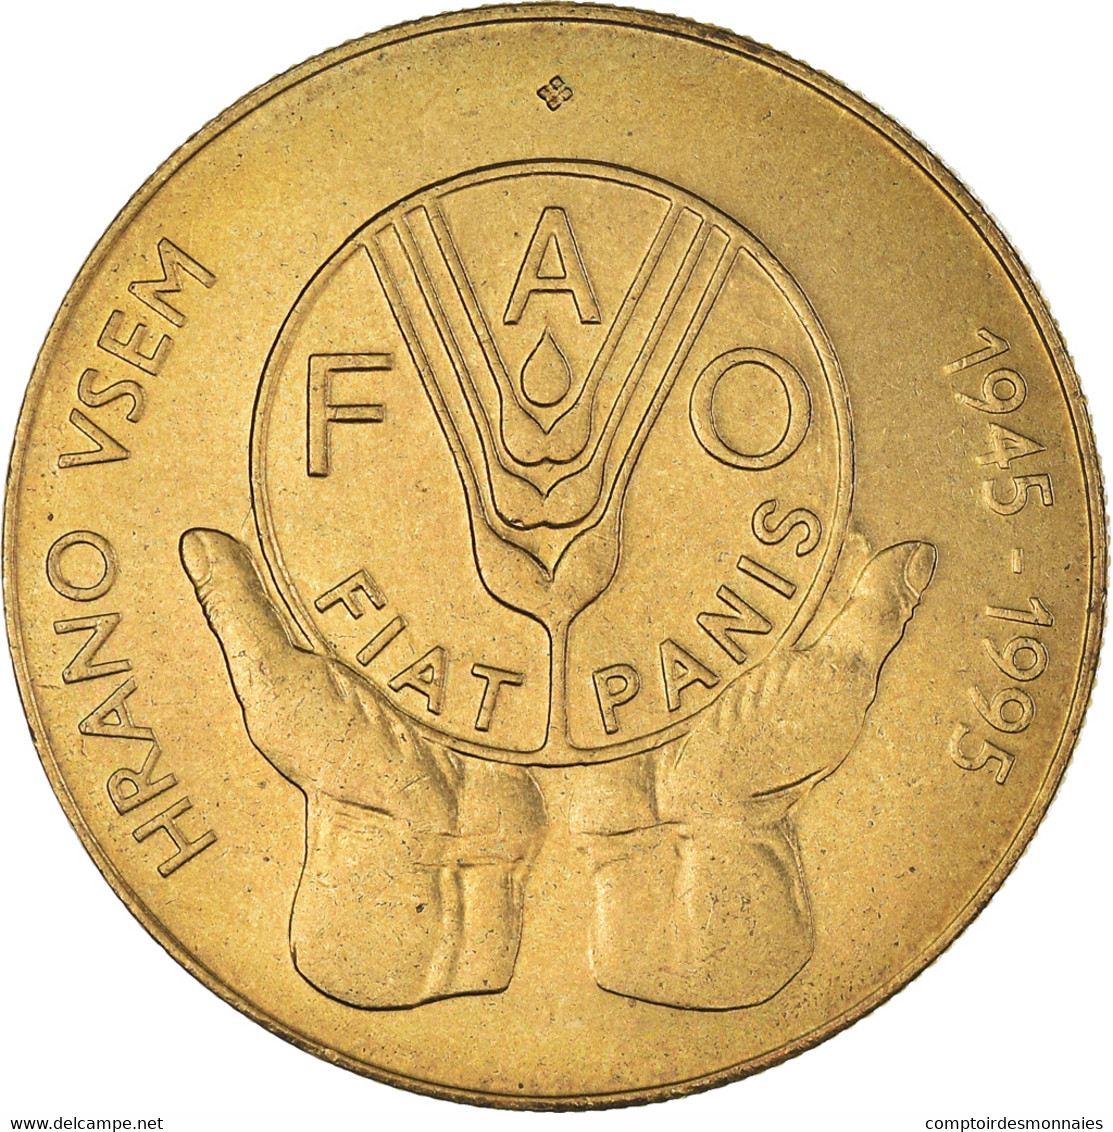 Monnaie, Slovénie, 5 Tolarjev, 1995, SUP, Nickel-Cuivre, KM:21 - Slovenia